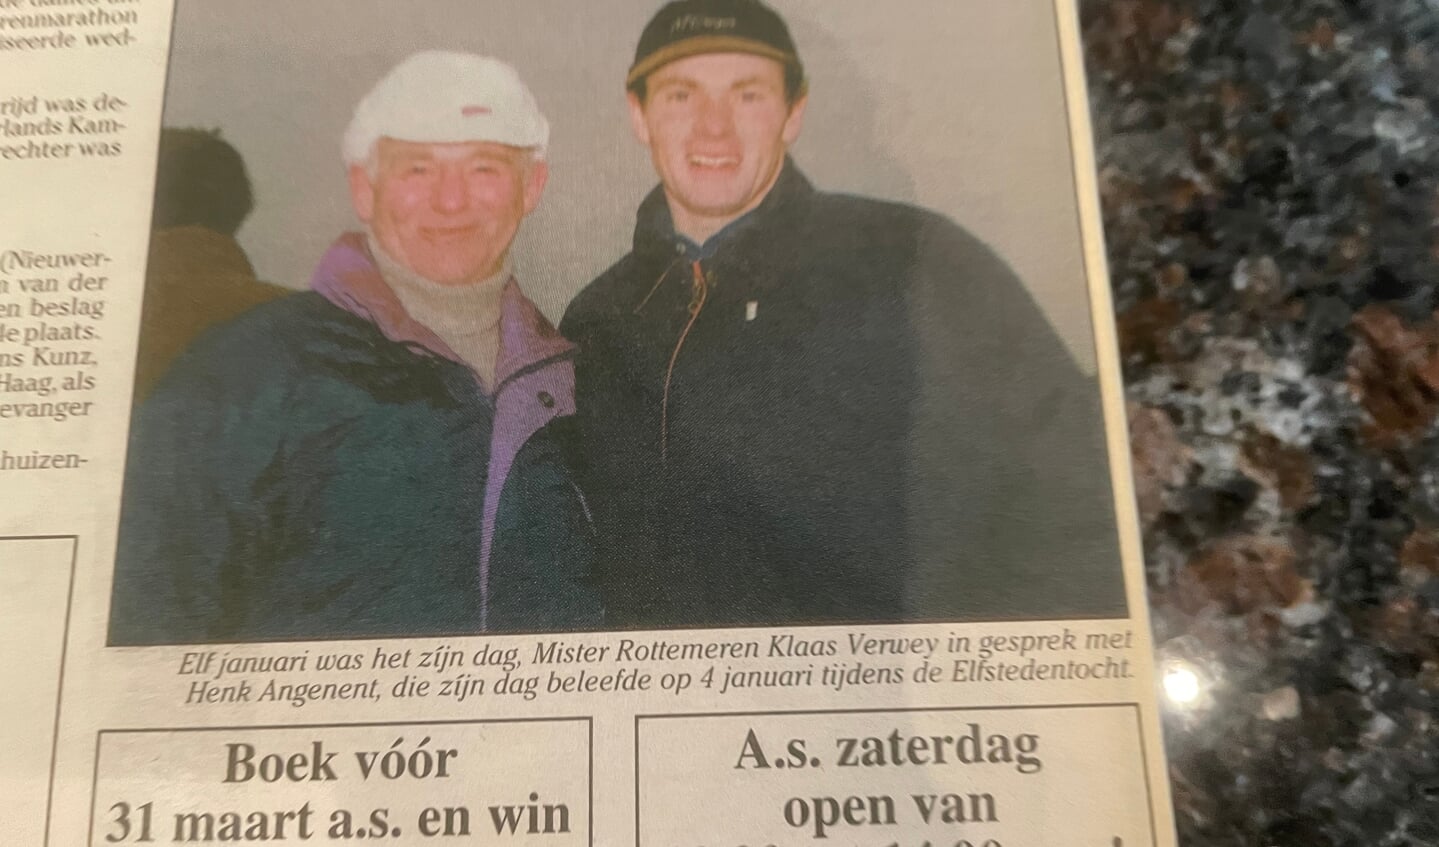 Henk Angenent en Klaas Verweij. 'Hij haalde de toppers naarZevenhuizen.' (knipsel HvH januari 1997)